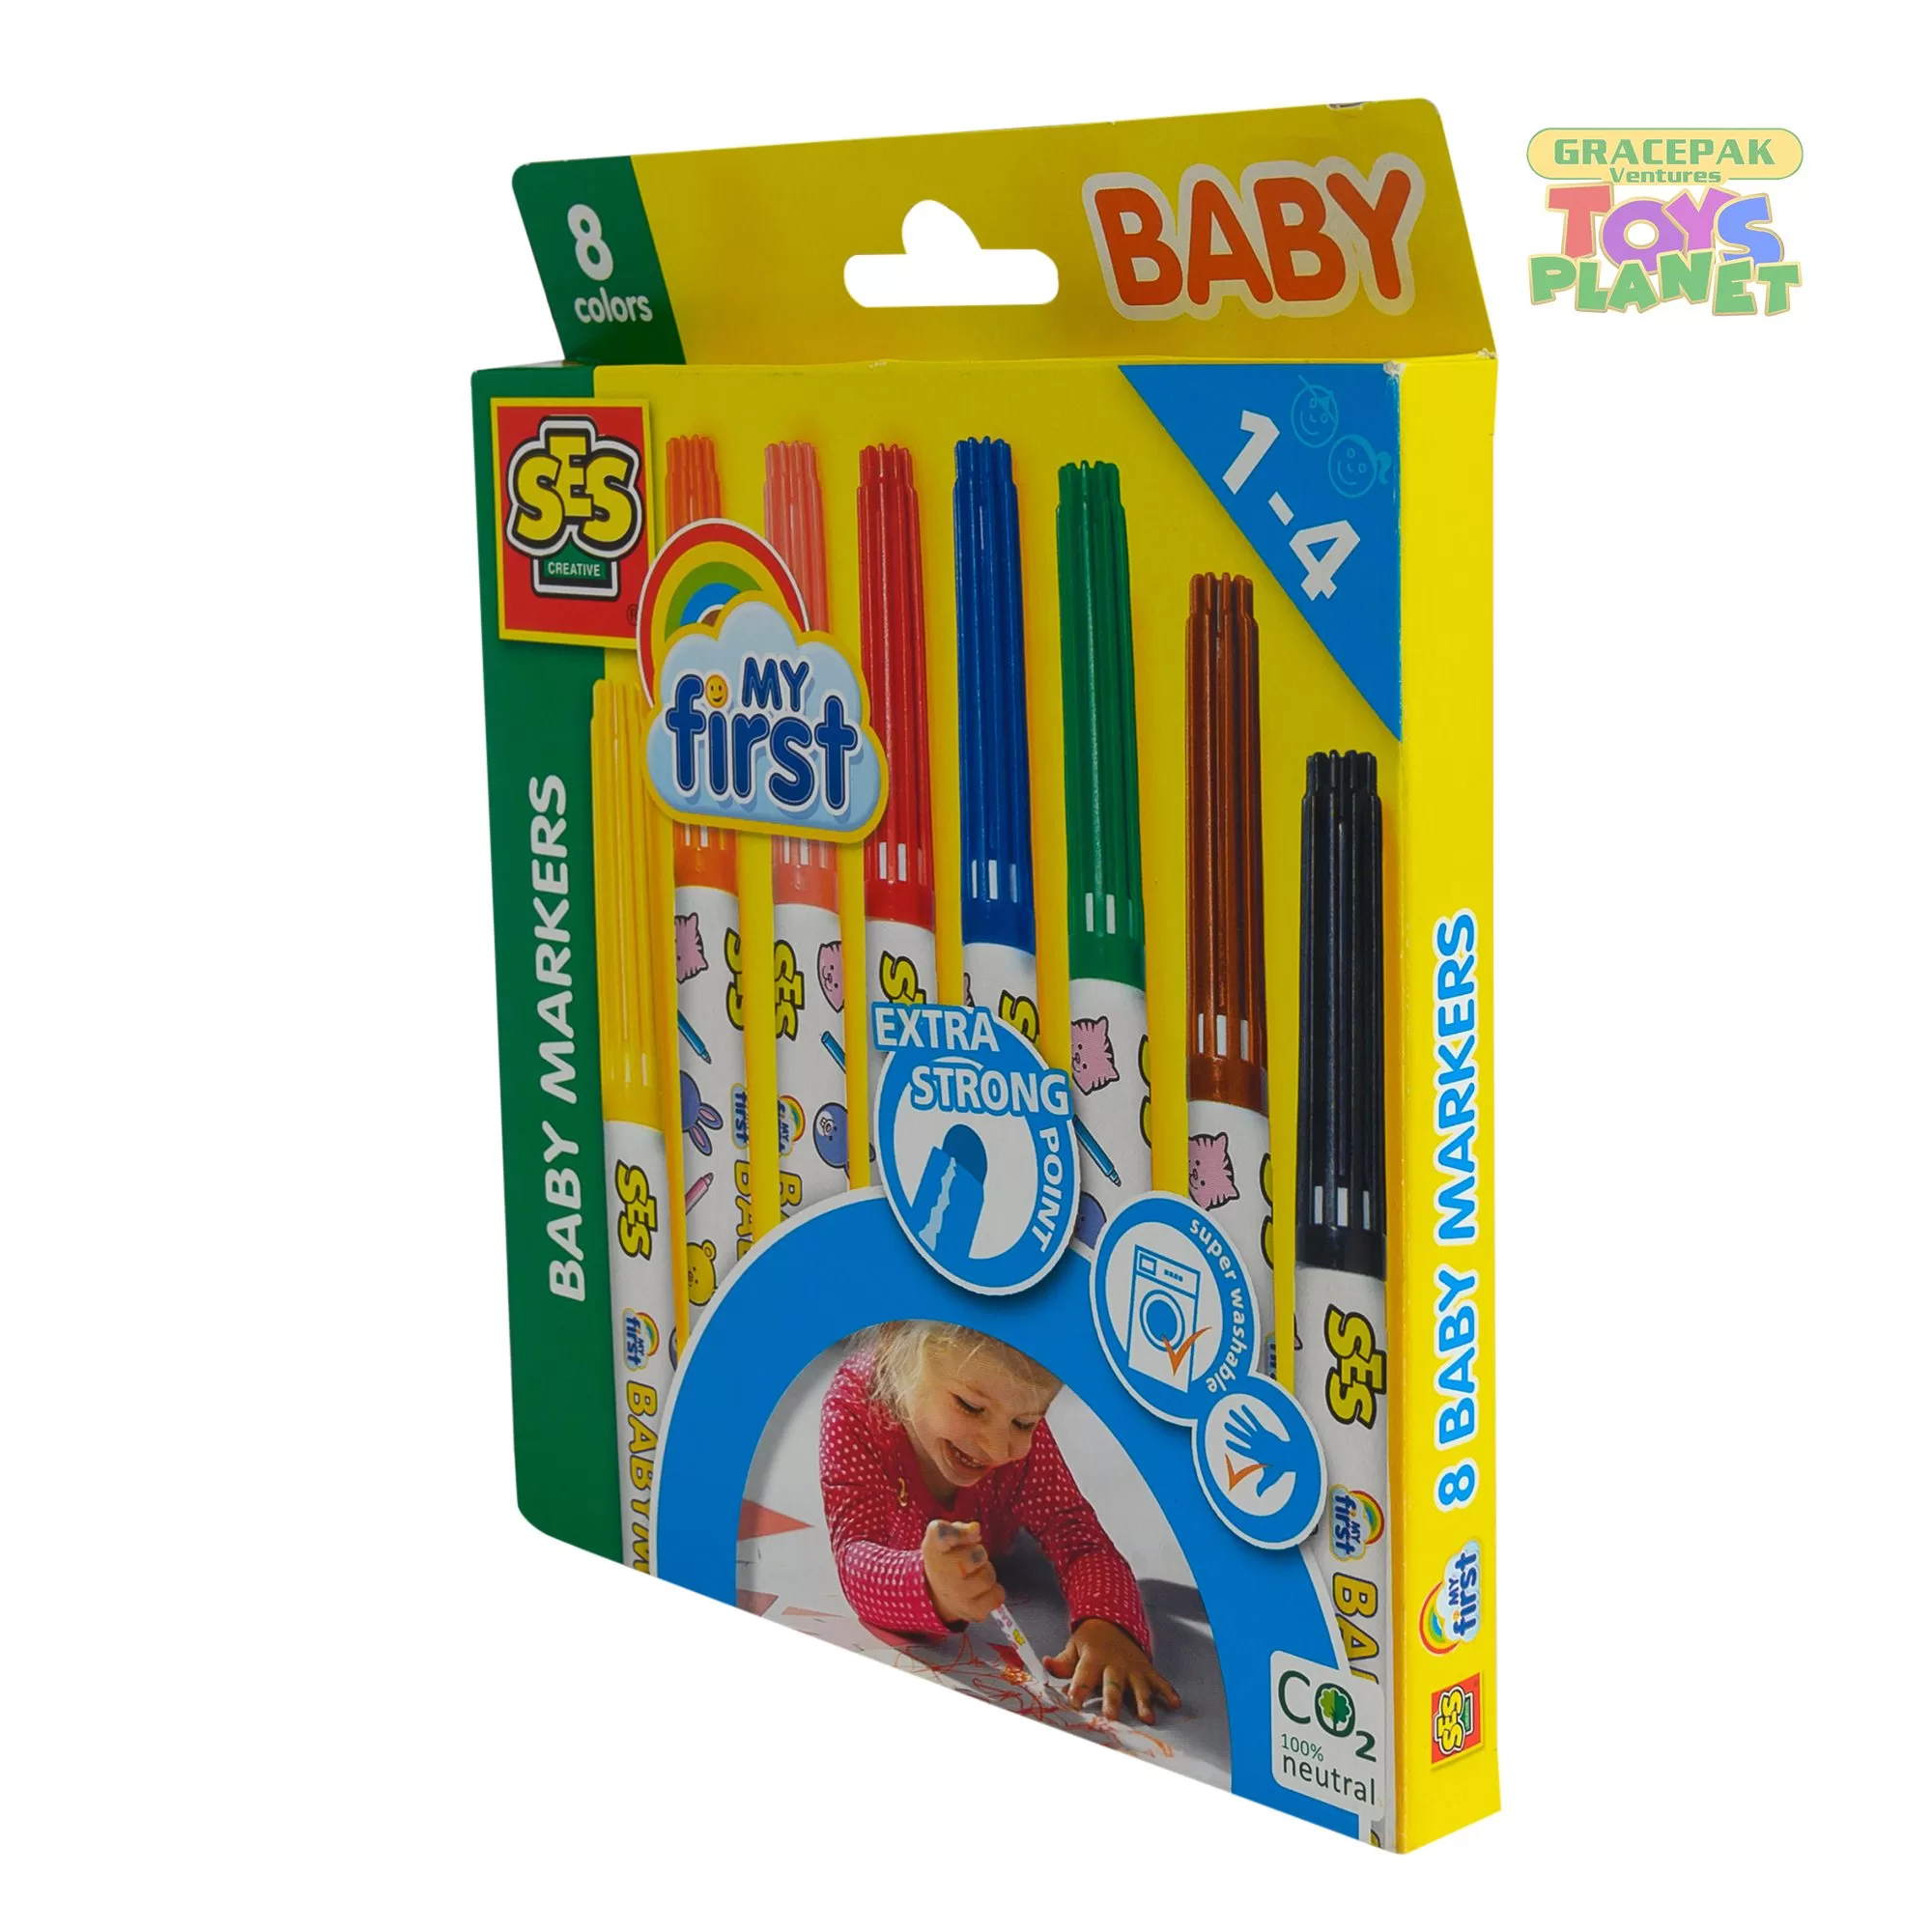 Onderzoek Opblazen Wiskundige My First Baby Markers 8 Colours | Gracepak Ventures-Toys Planet